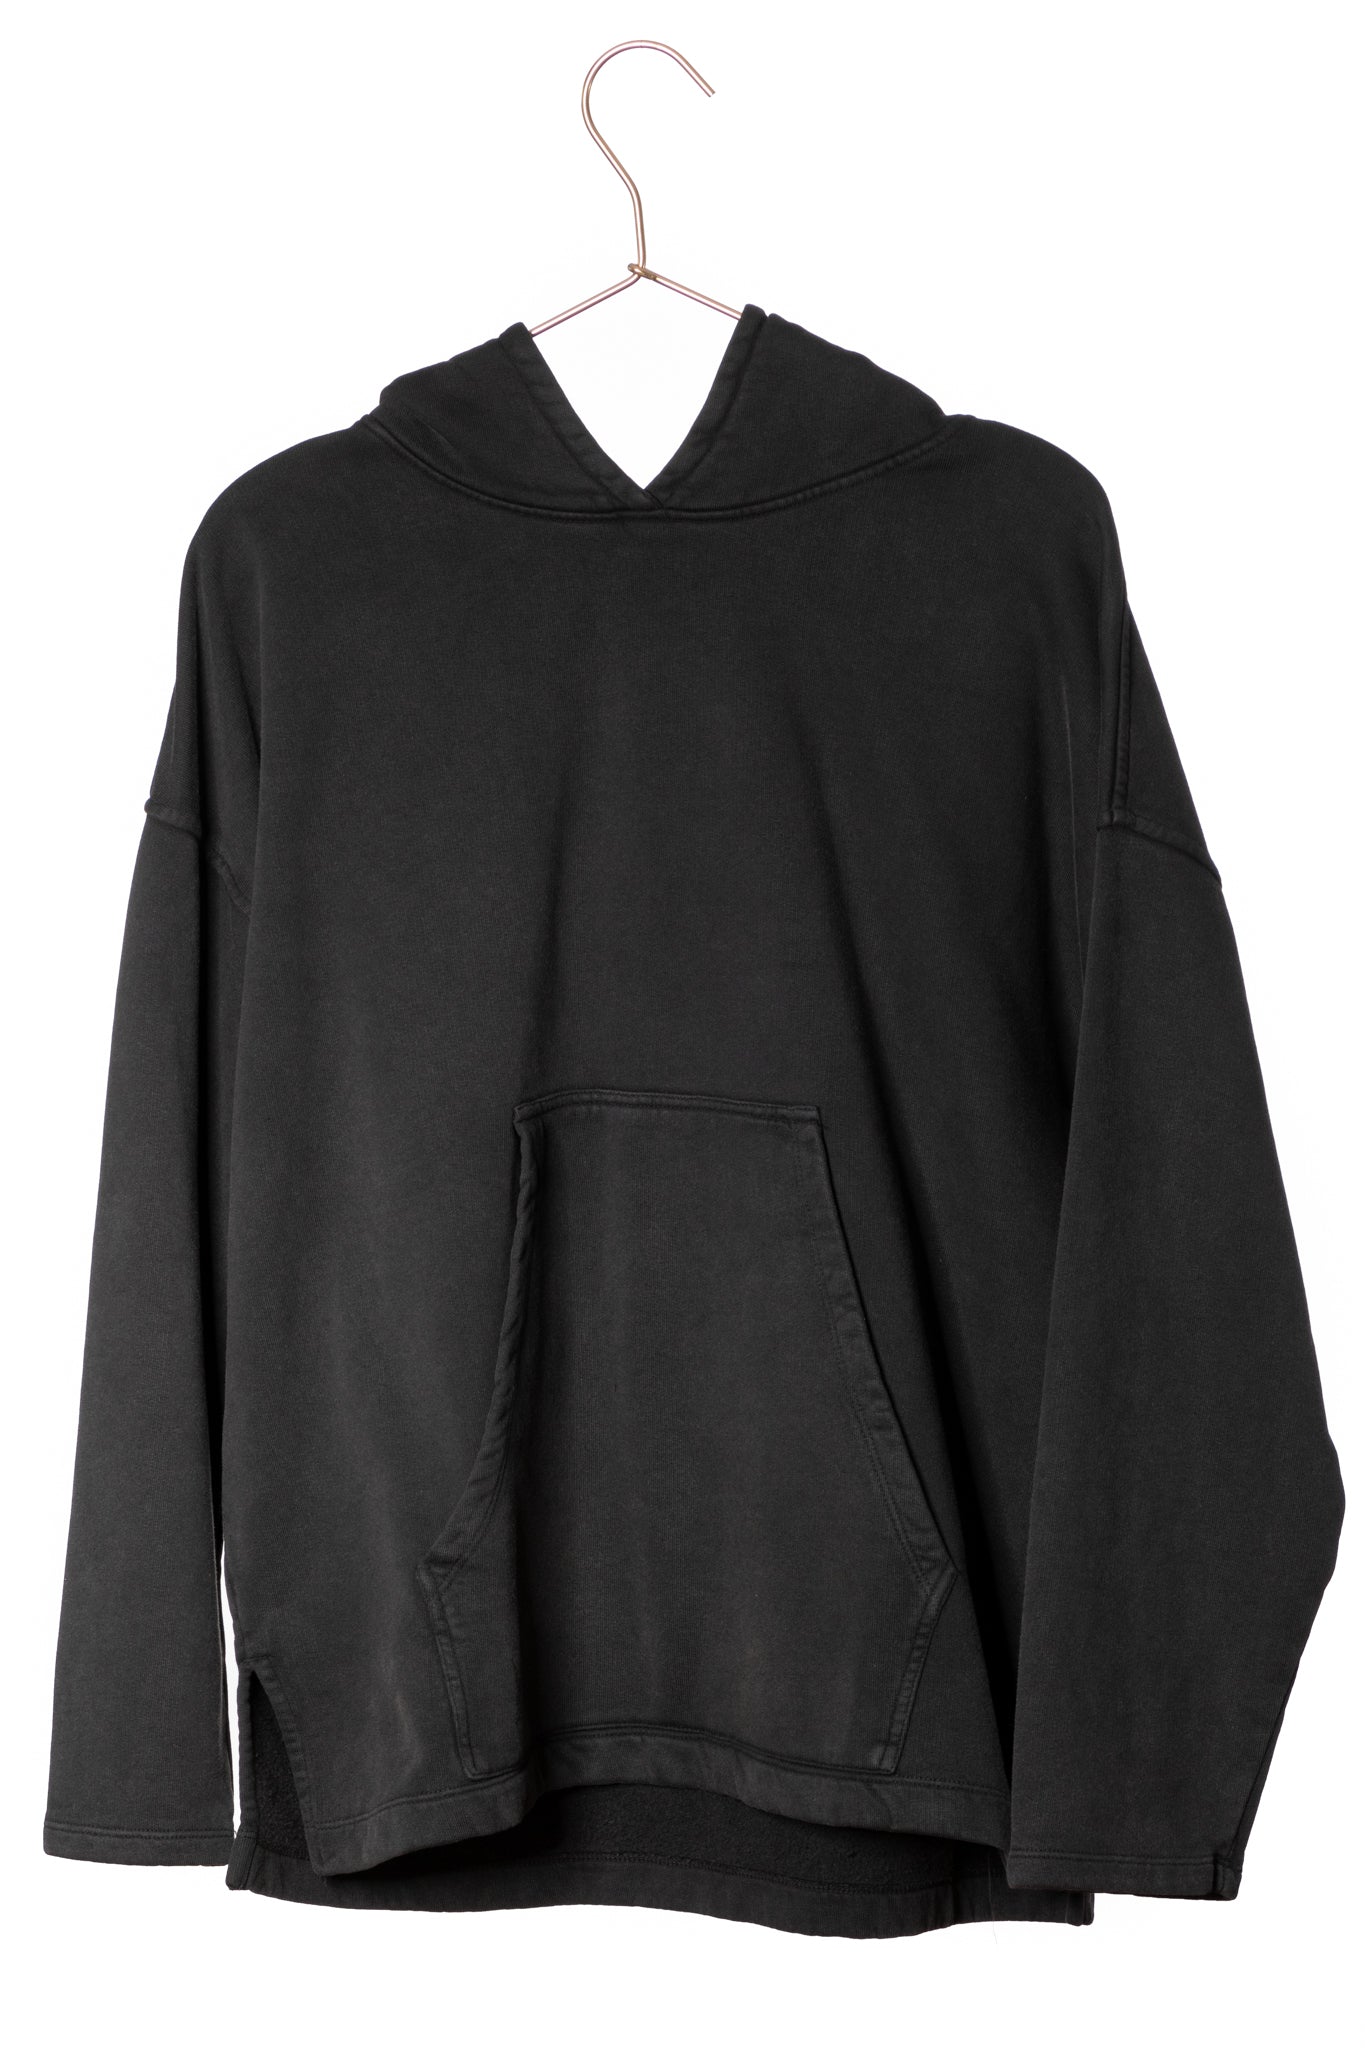 Sweat capuche femme coton bio certifié GOTS hoodie en molleton bio oversize vareuse noir vieilli, noir délavé, noir fade out, noir gris